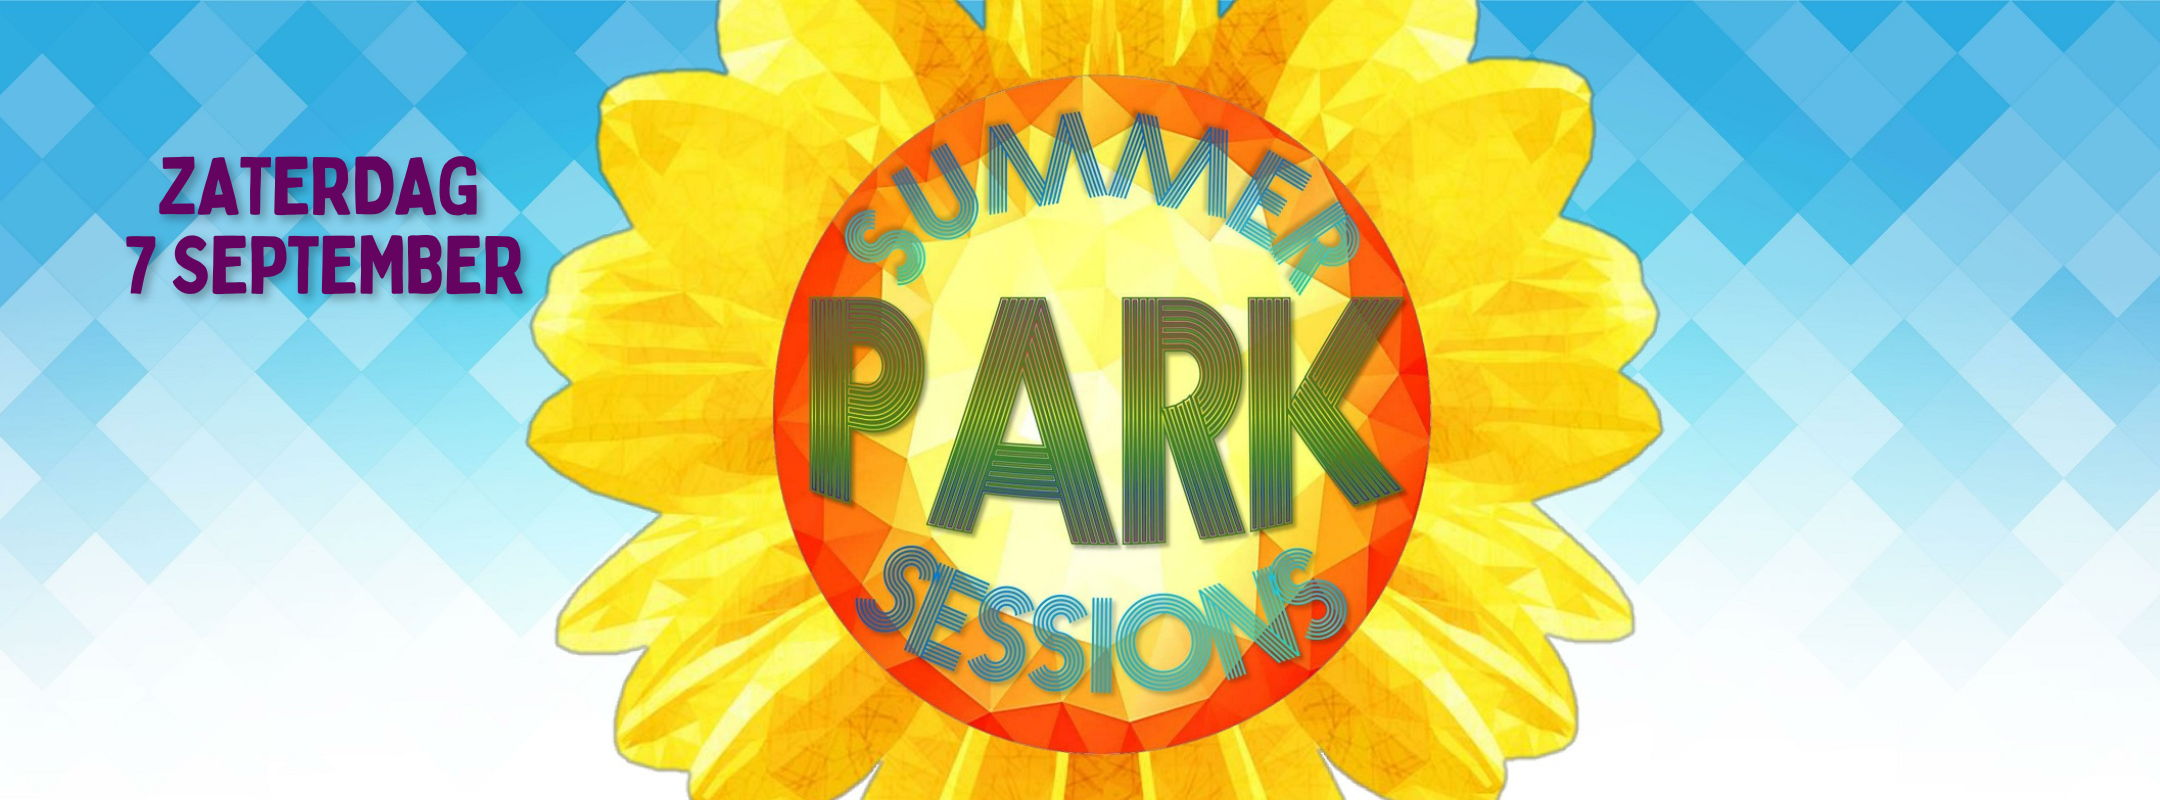 summerparksessionszaterdag24